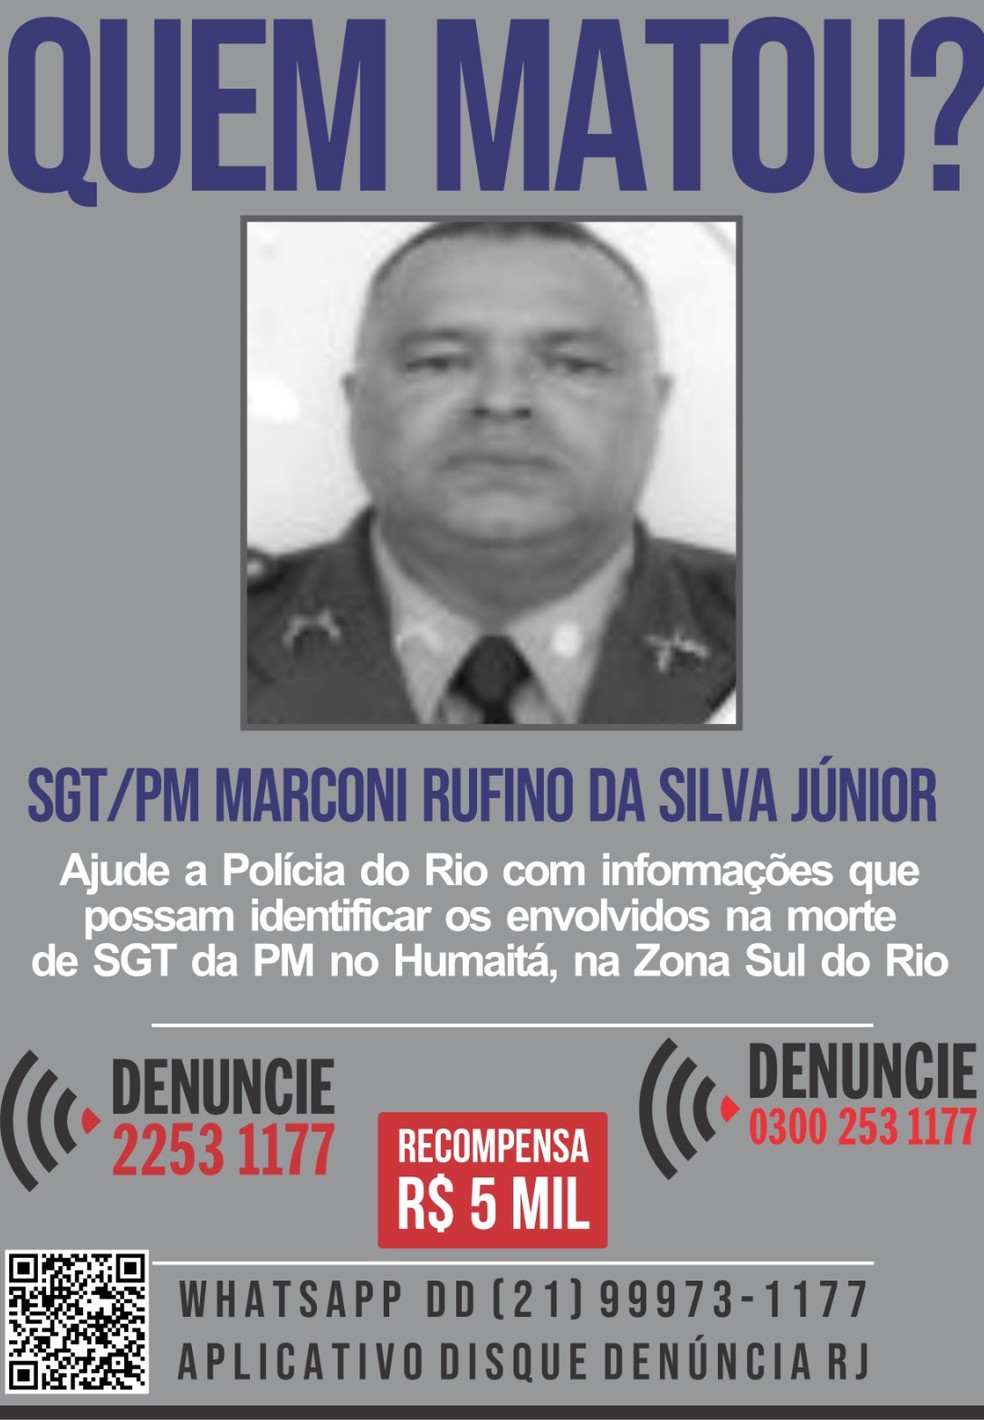 Disque Denúncia oferece recompensa por informações sobre assassinos do PM Marconi Rufino da Silva Junior — Foto: Reprodução